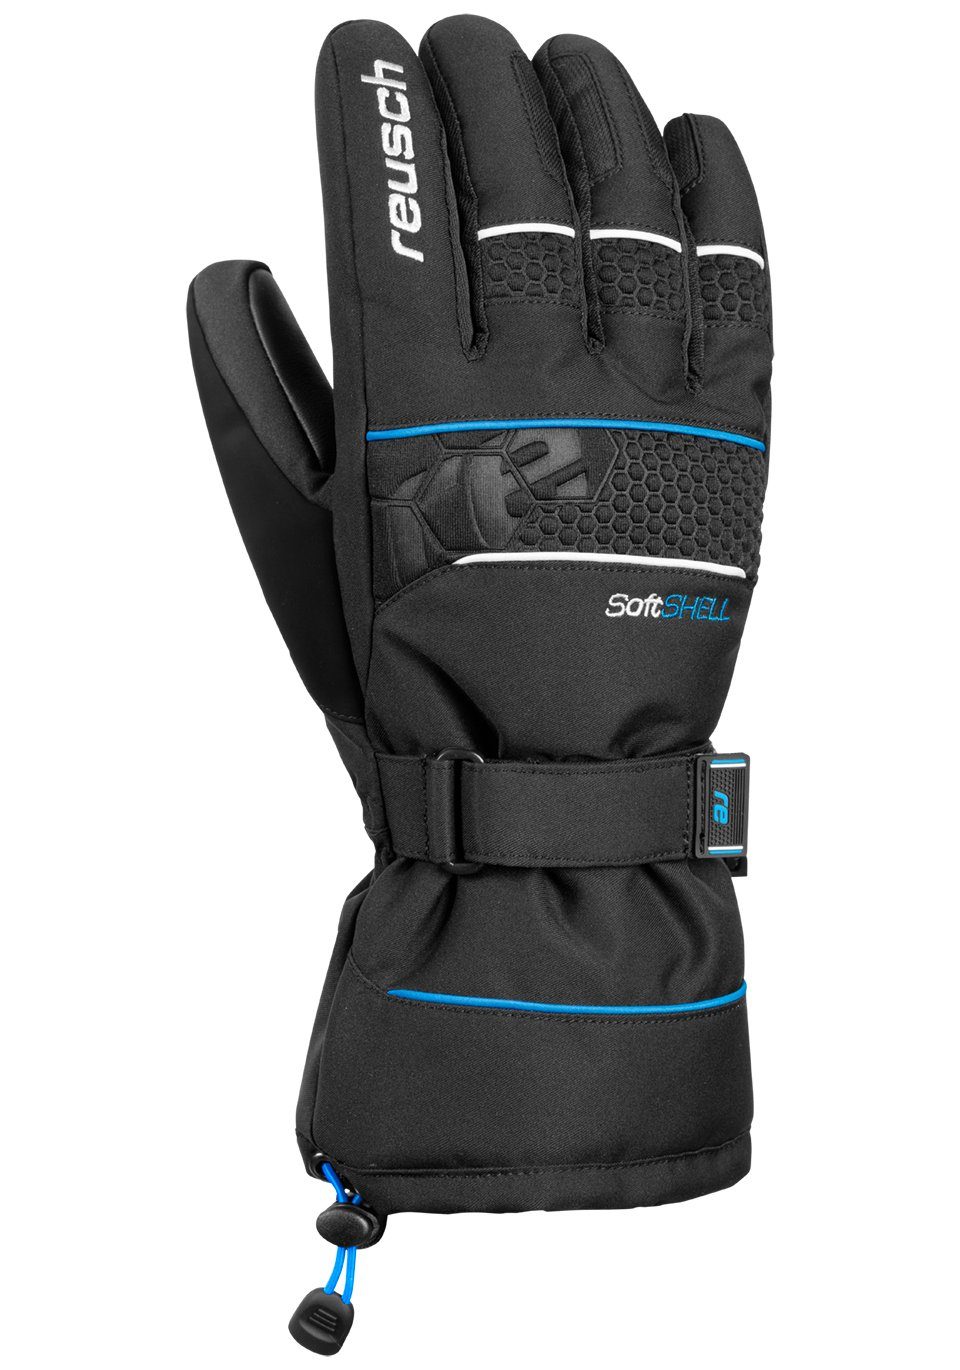 XT in blau-schwarz Design Reusch sportlichem Skihandschuhe R-TEX Connor